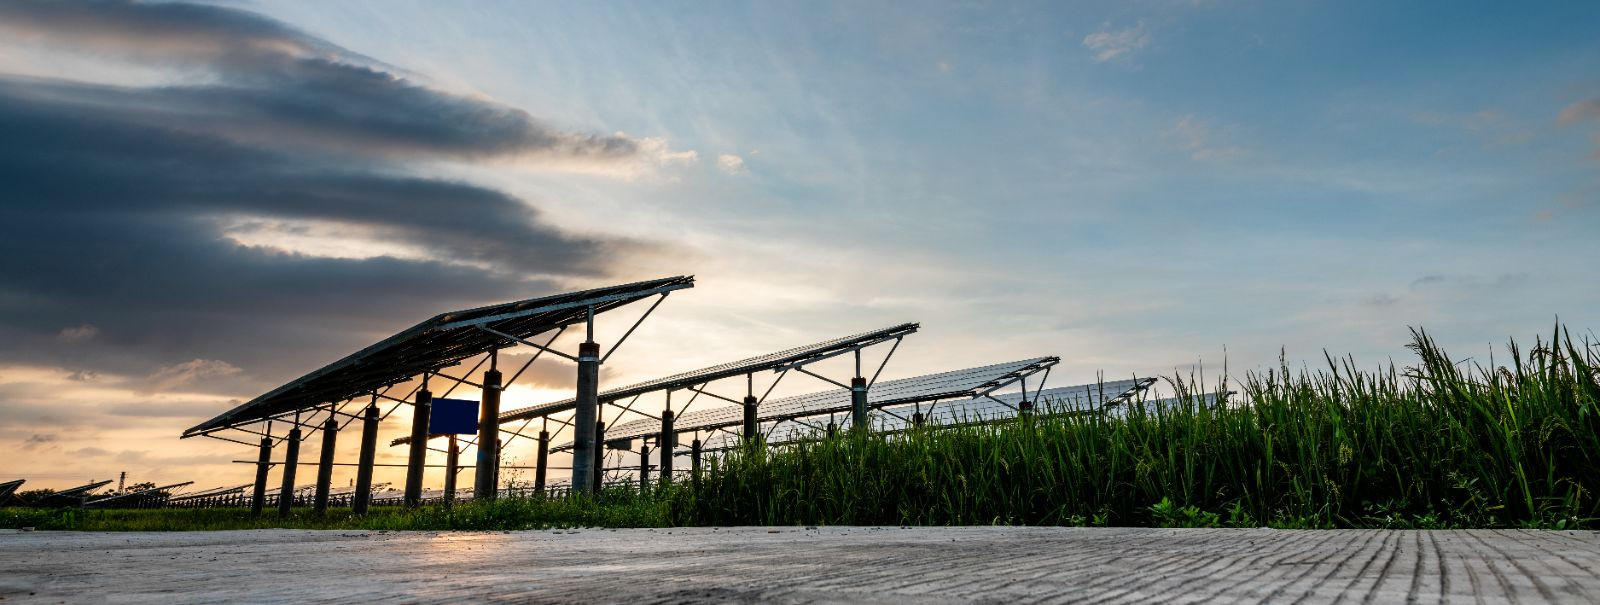 Päikesepargid, tuntud ka kui päikesejaamad, on suuremahulised päikesepaneelide paigaldised, mis on mõeldud päikeseenergia massiliseks elektriks muundamiseks. Ne